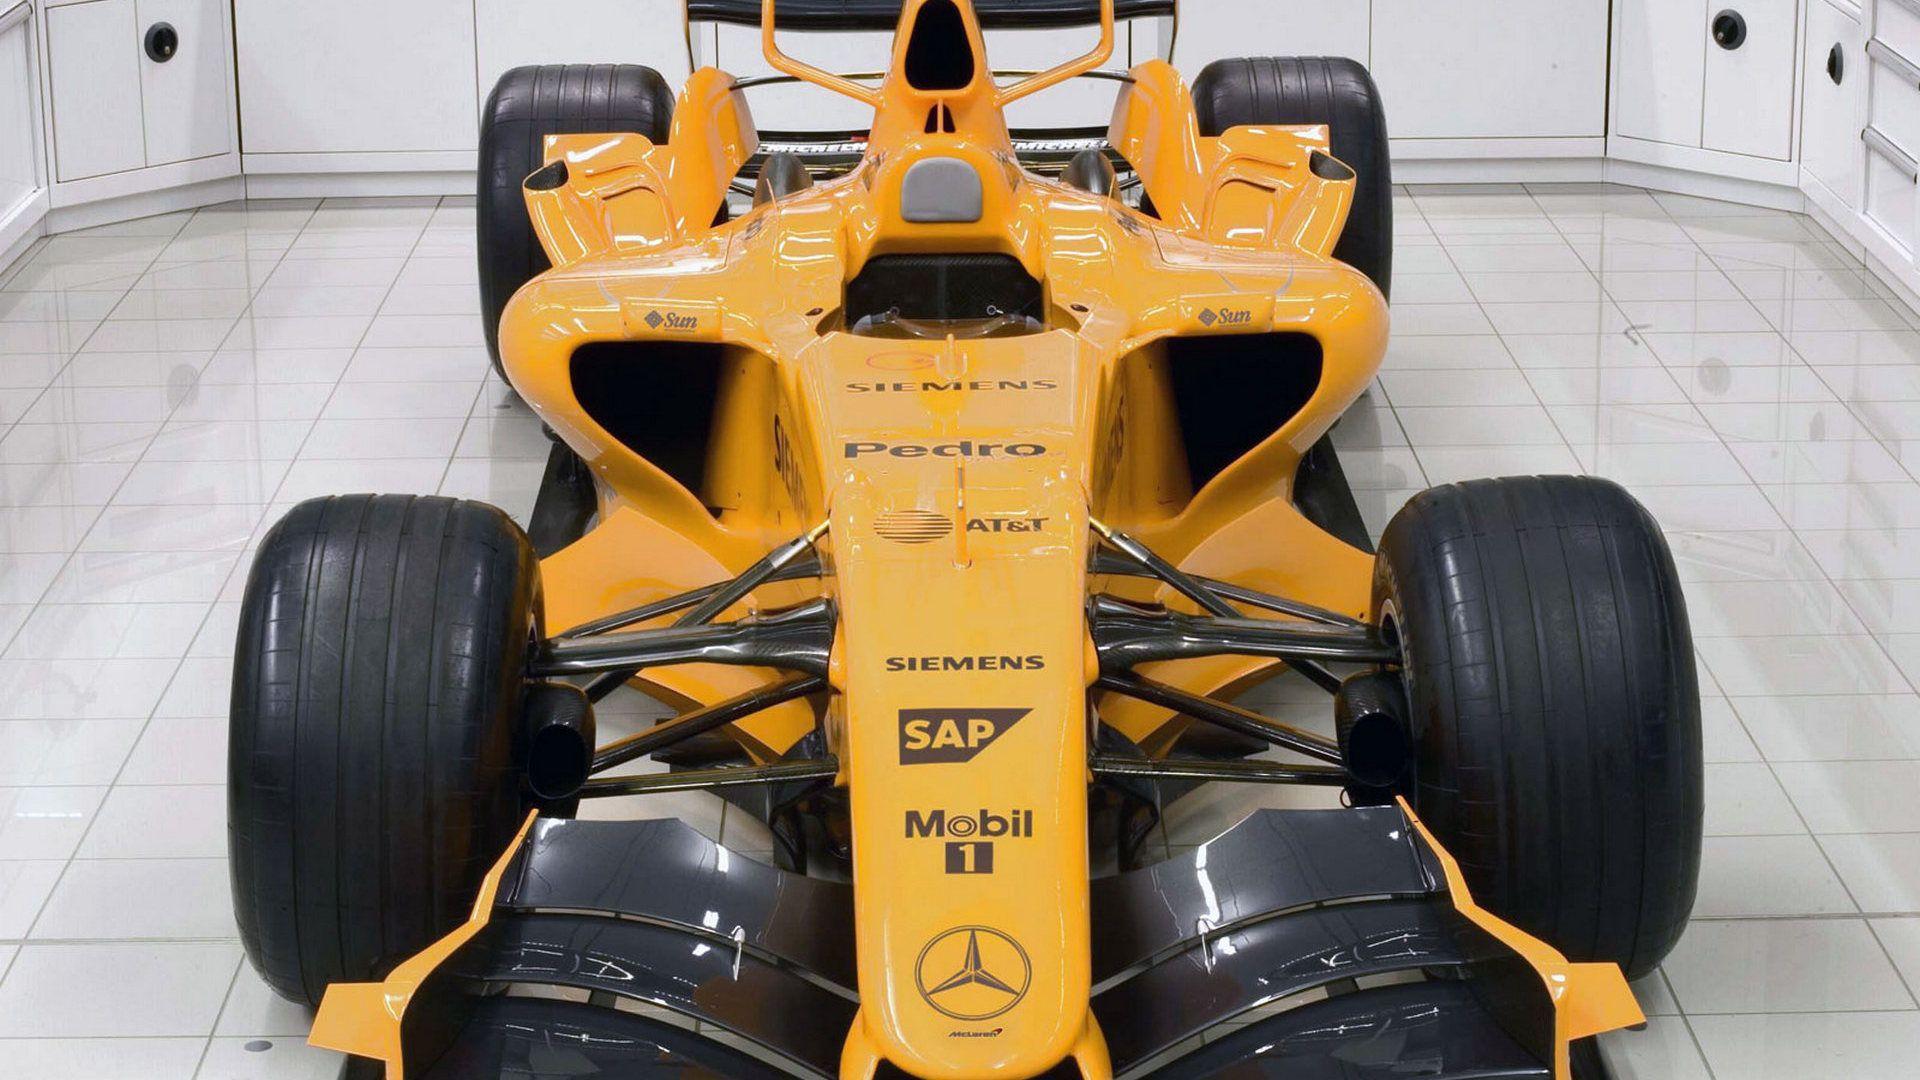 HD Wallpaper 2006 Formula 1 Car Launches